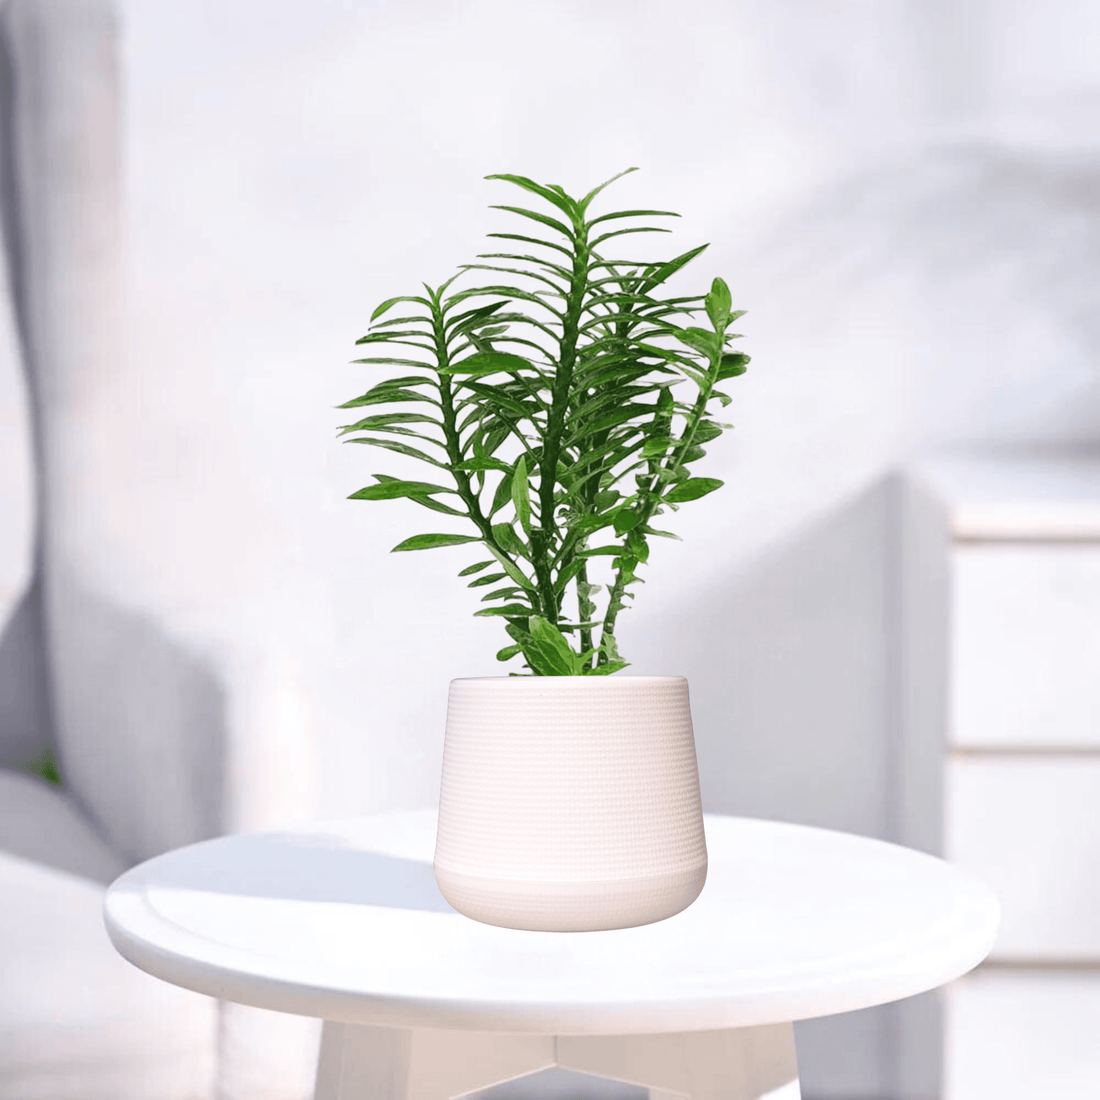 Pedilanthus Green | Indoor Plant